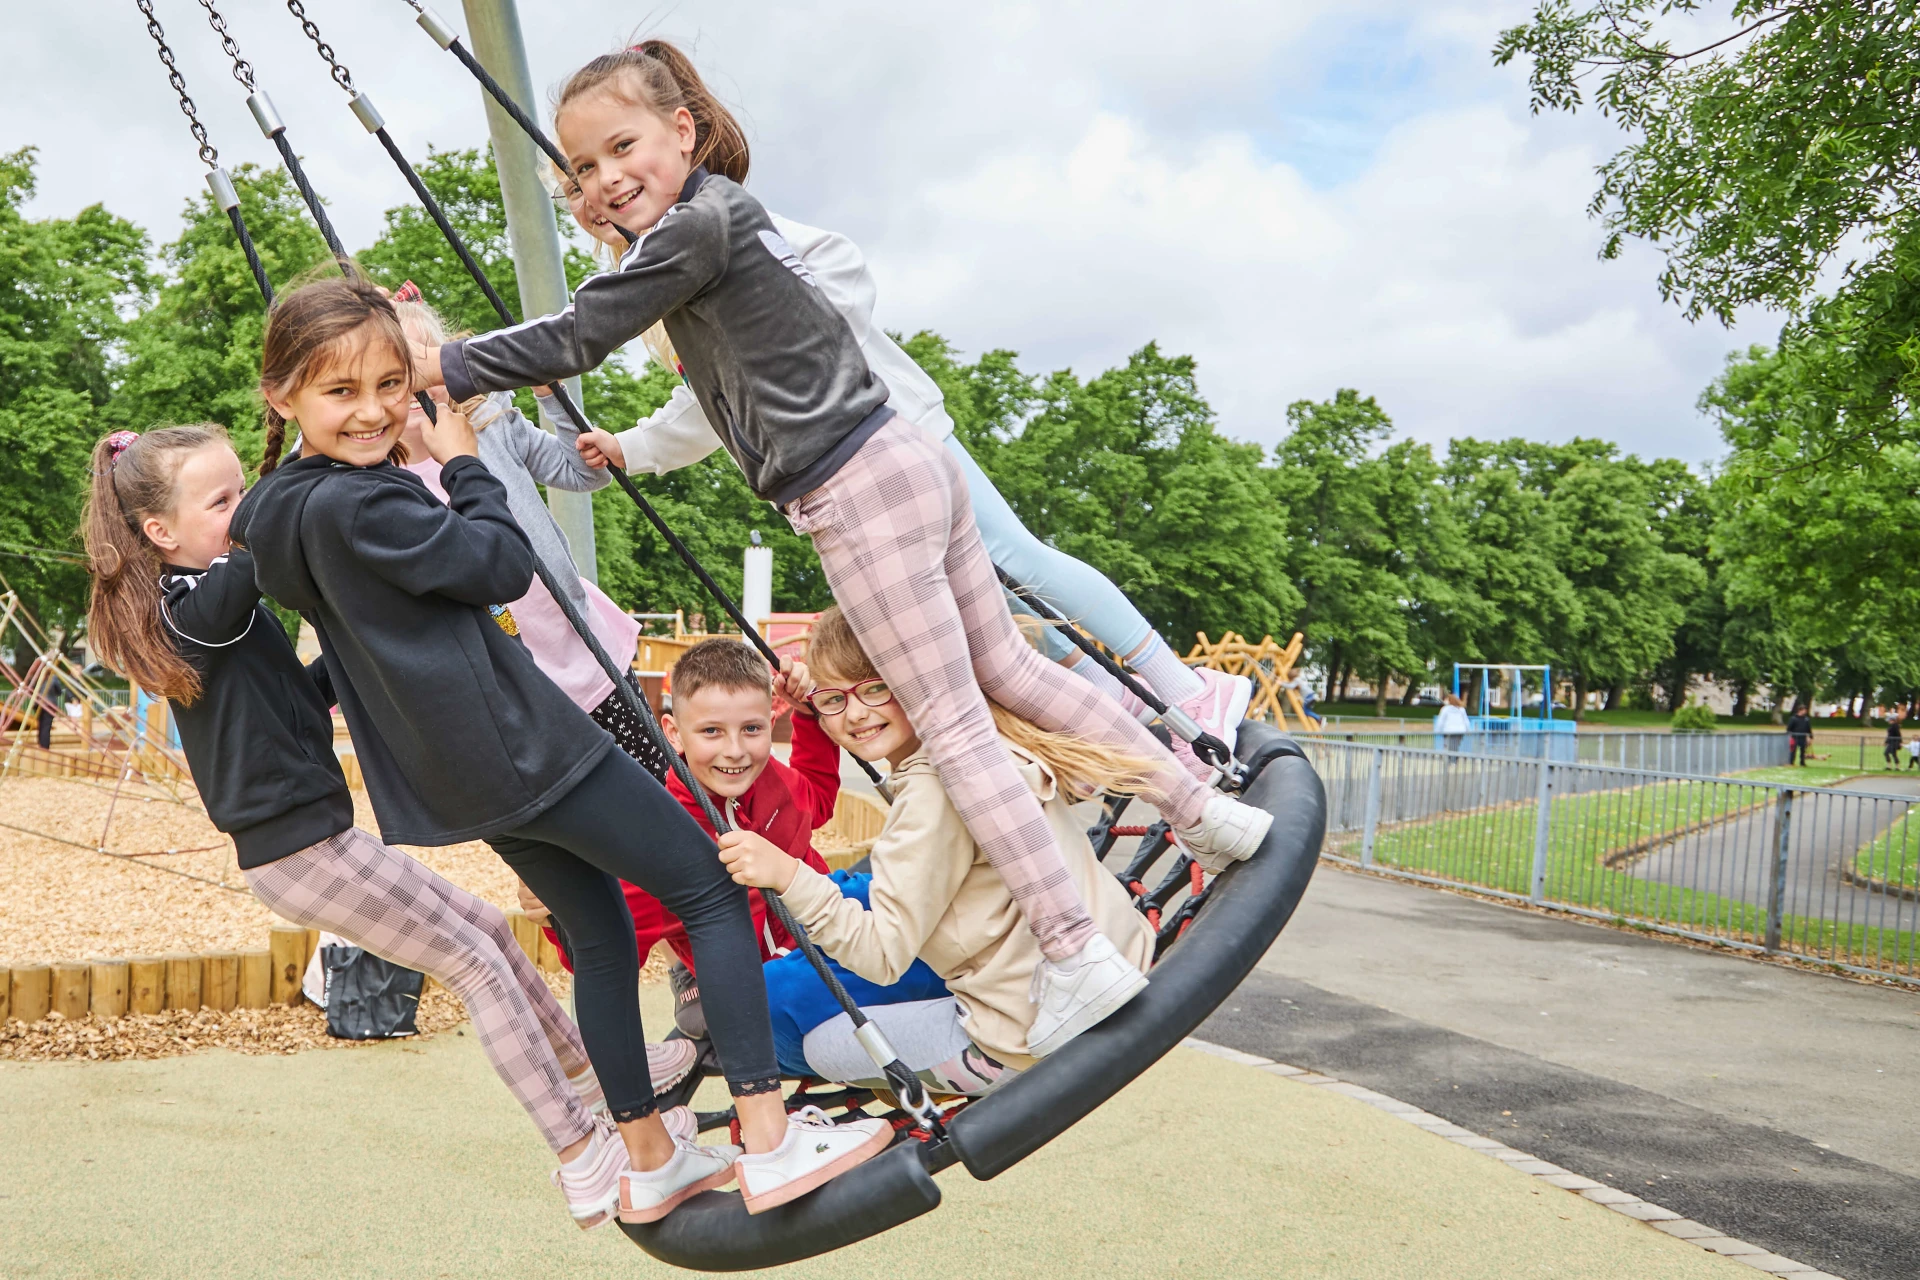 Zetland Park - Kids on a swing